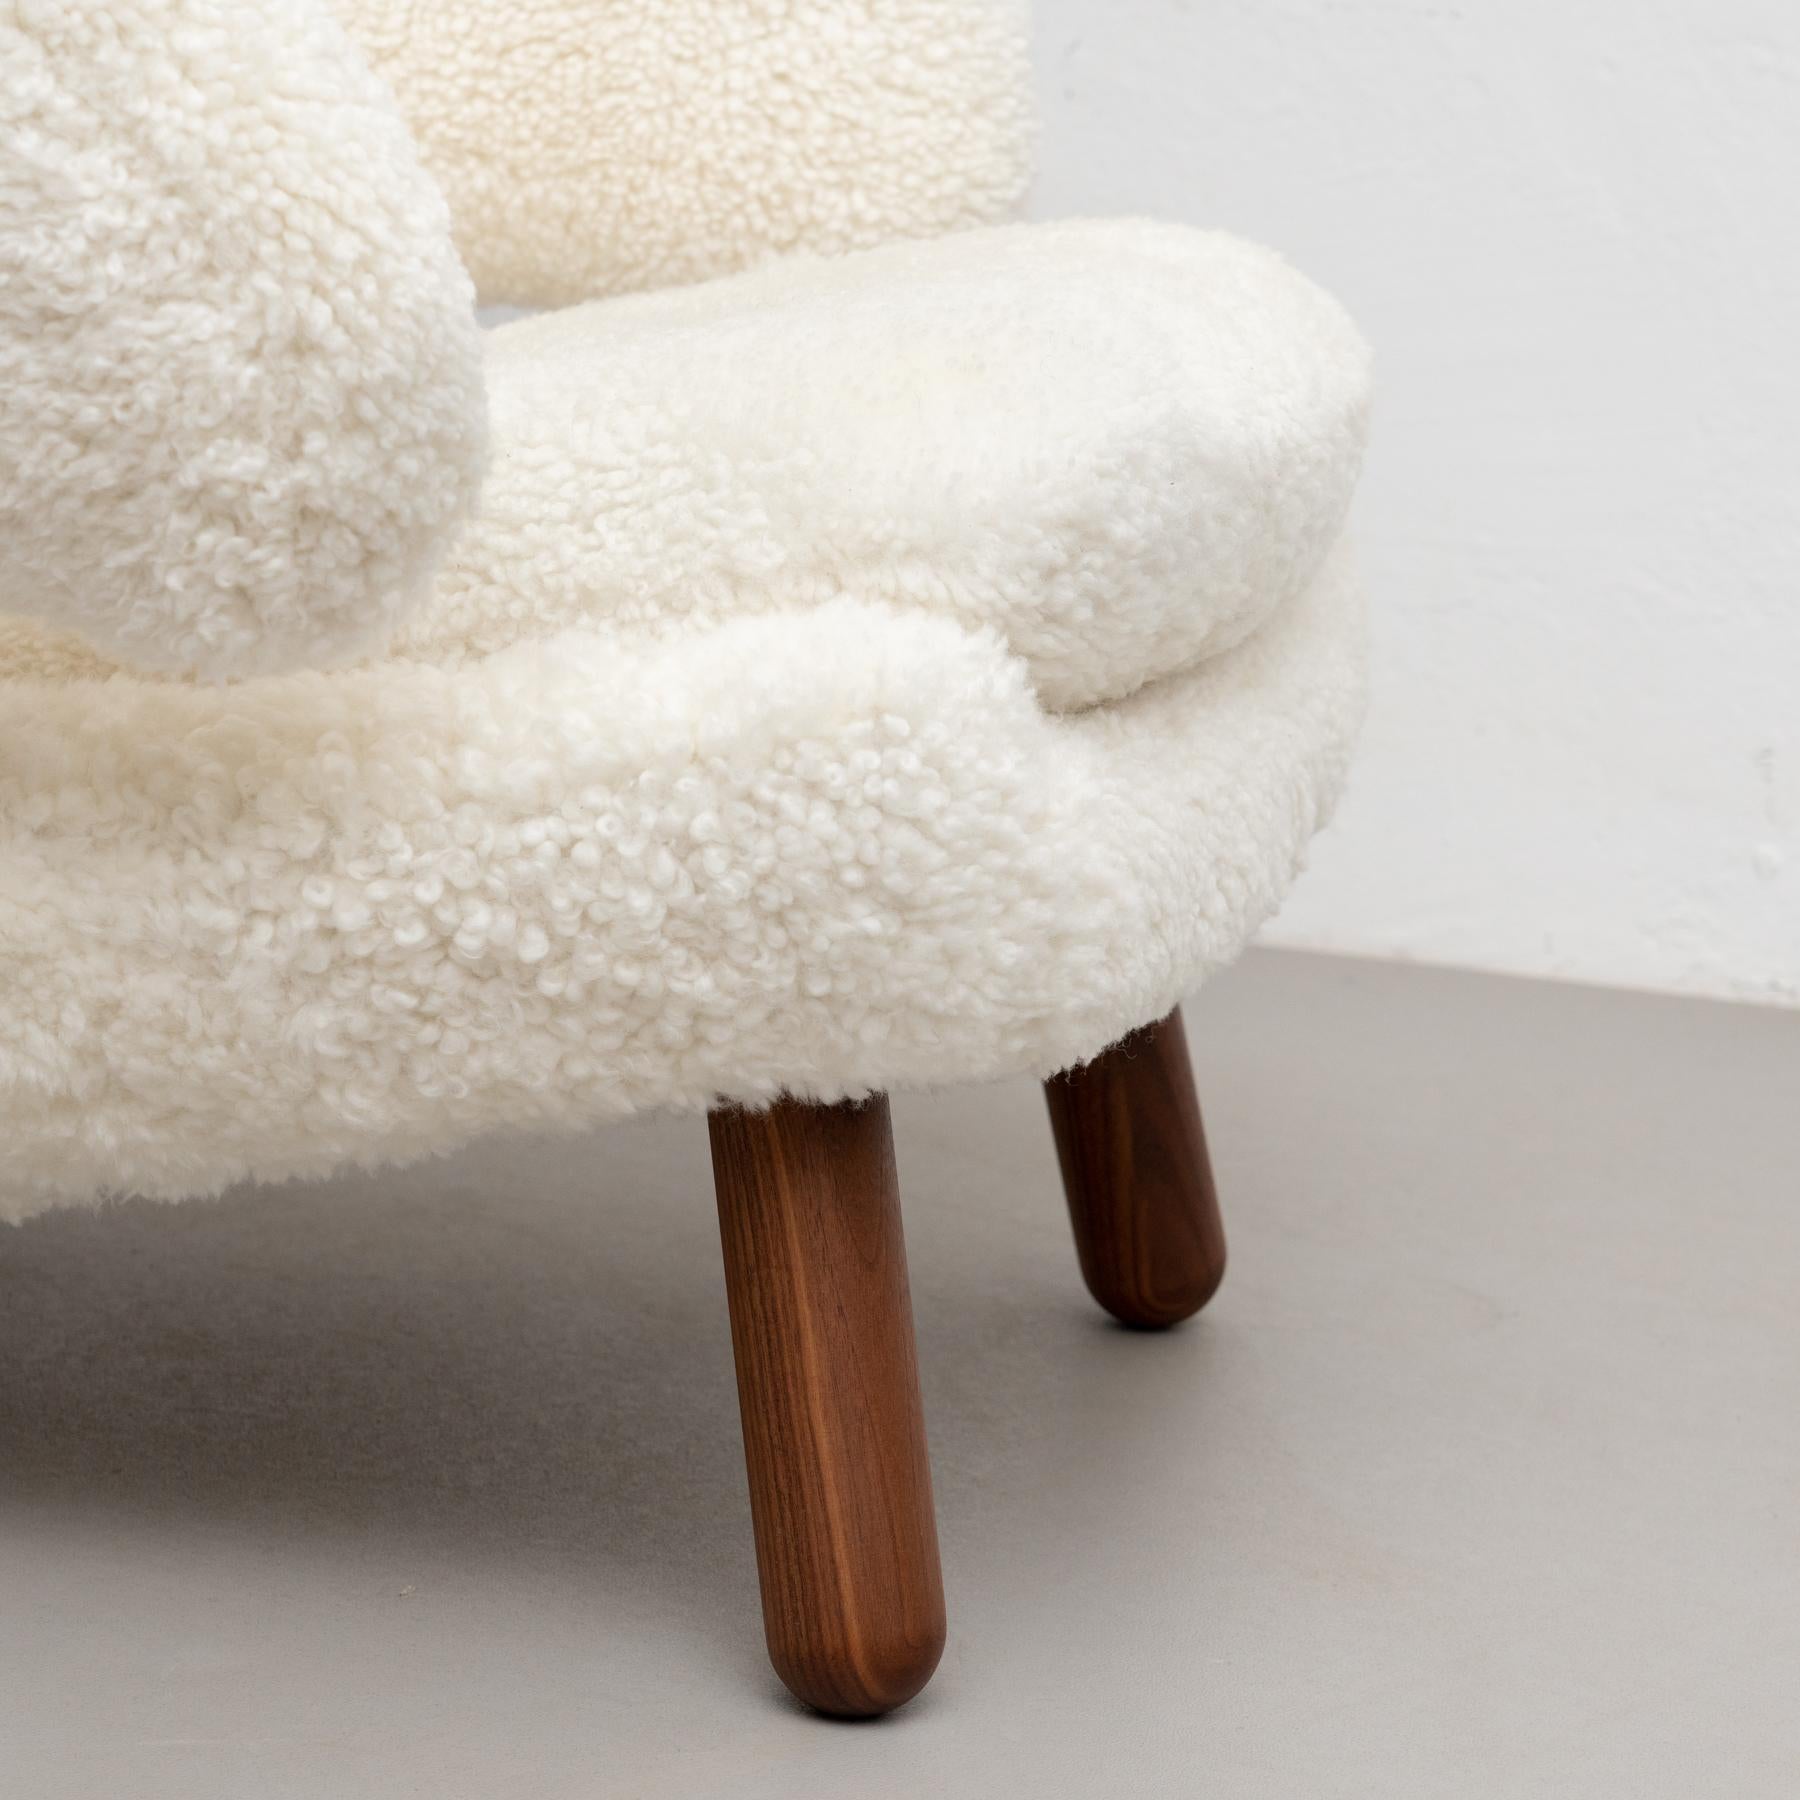 Finn Juhl Pelican Chair Upholstered in Gotland Sheepskin For Sale 4